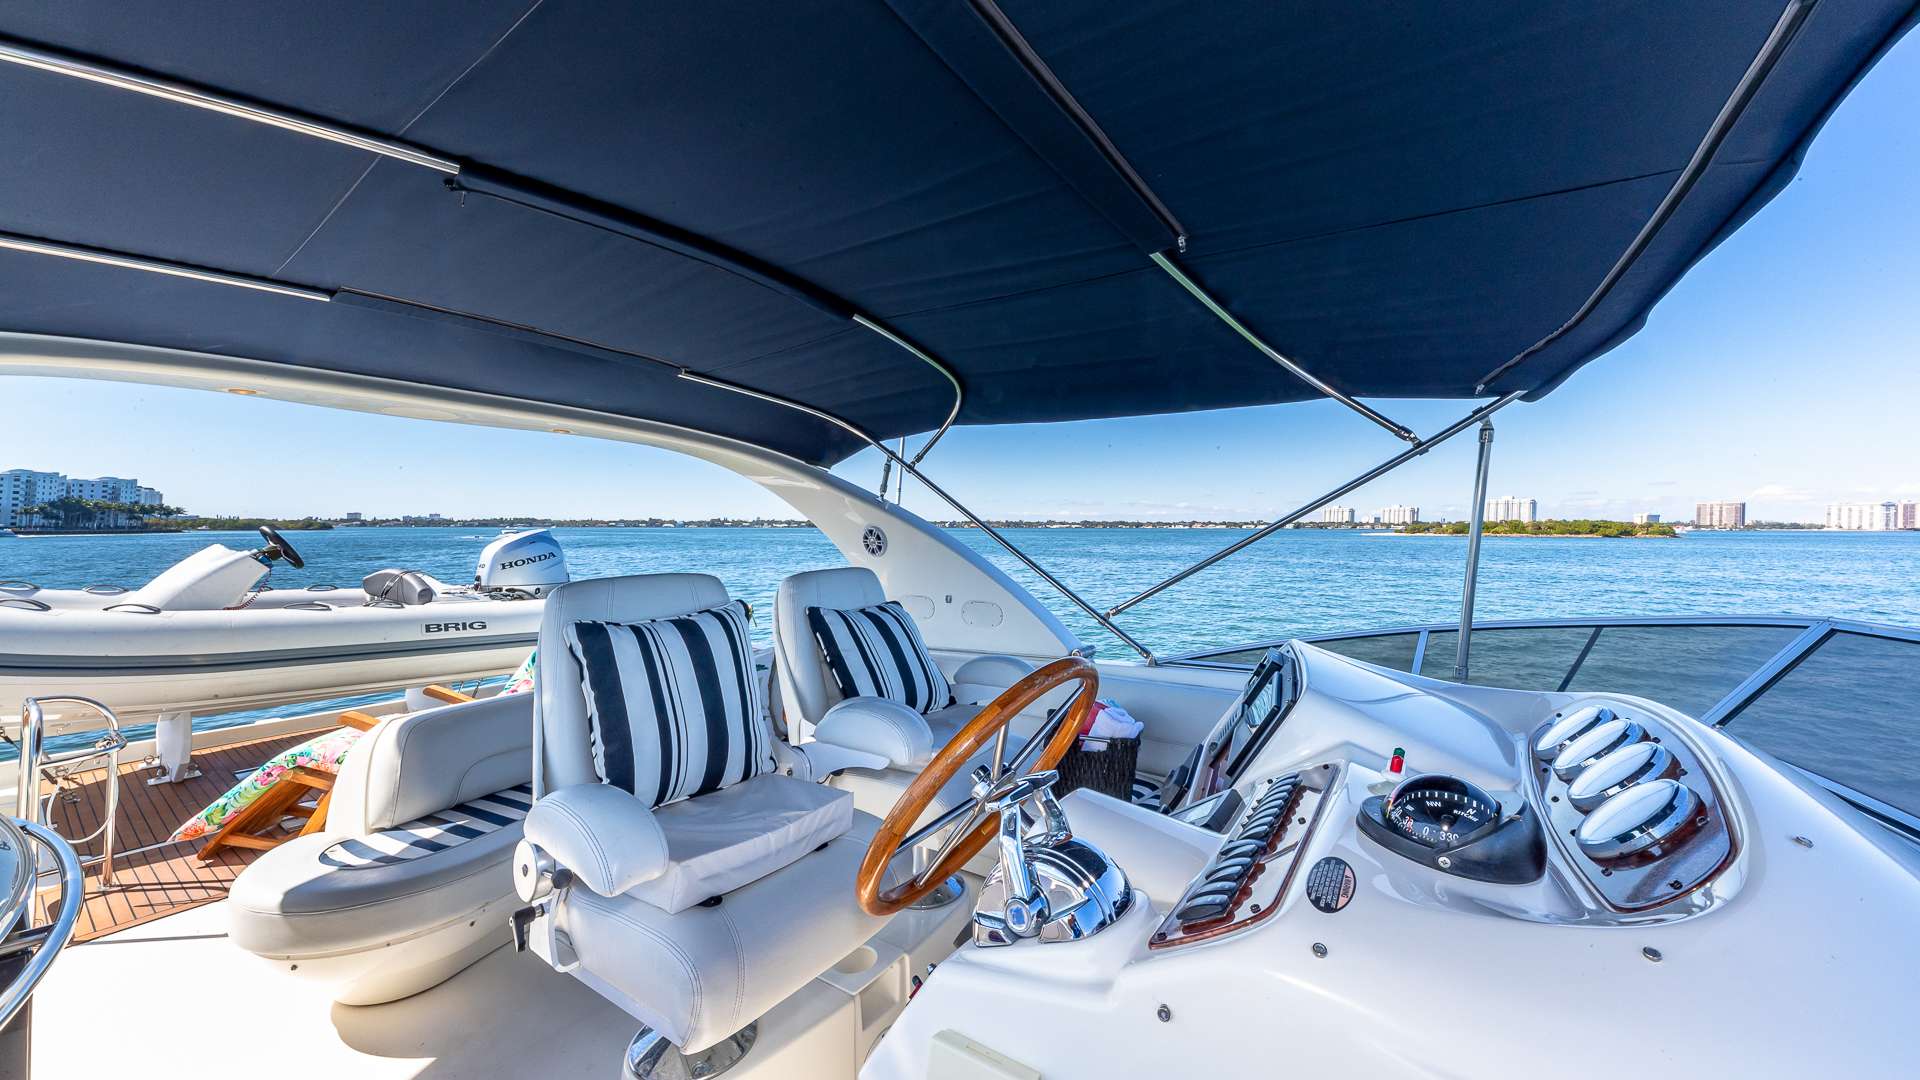 ELEGANT LADY - Luxury yacht charter Bahamas & Boat hire in Florida & Bahamas 5